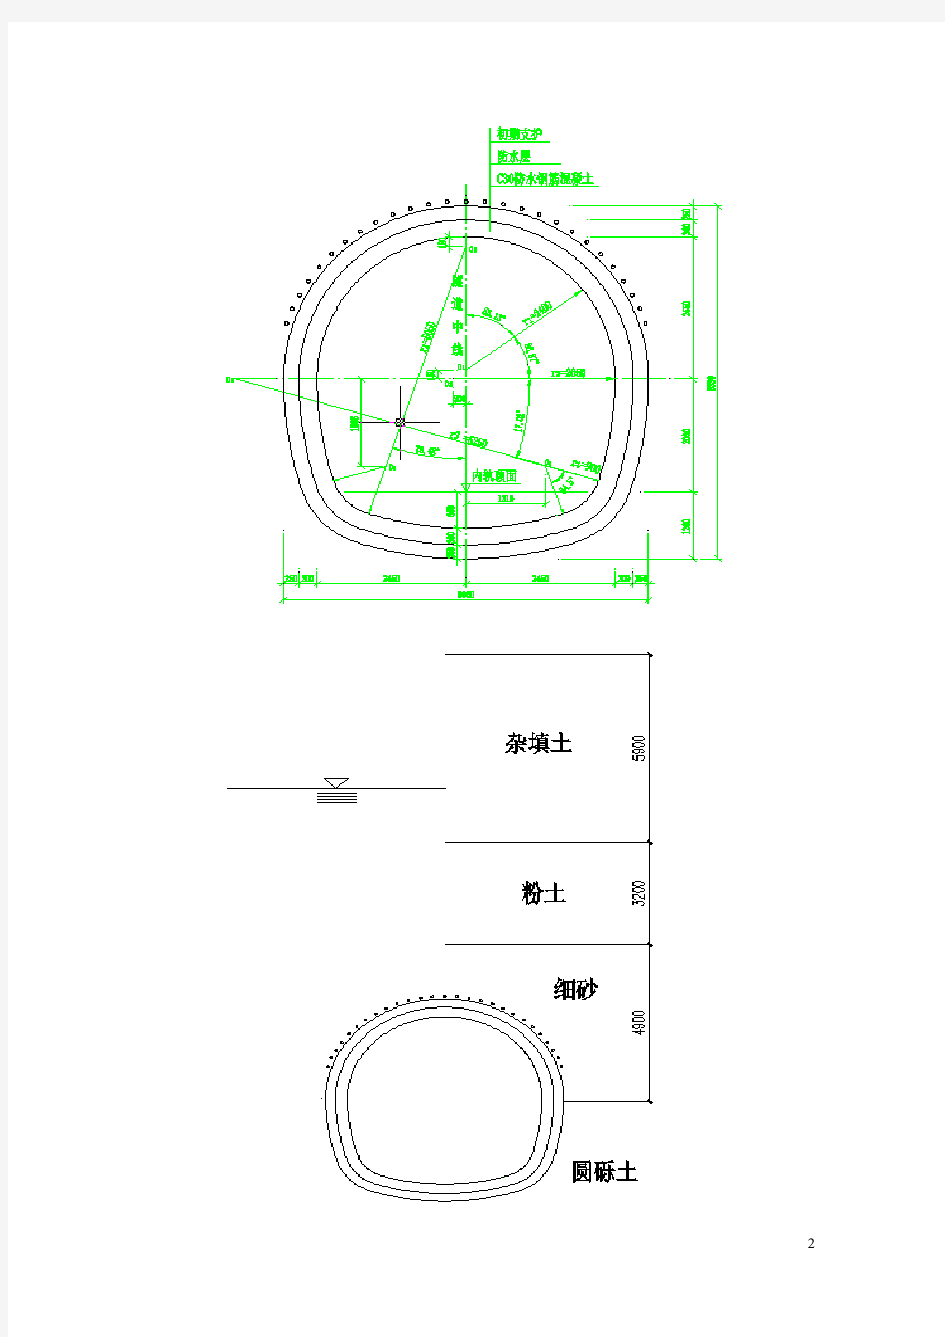 参考——区间隧道结构设计